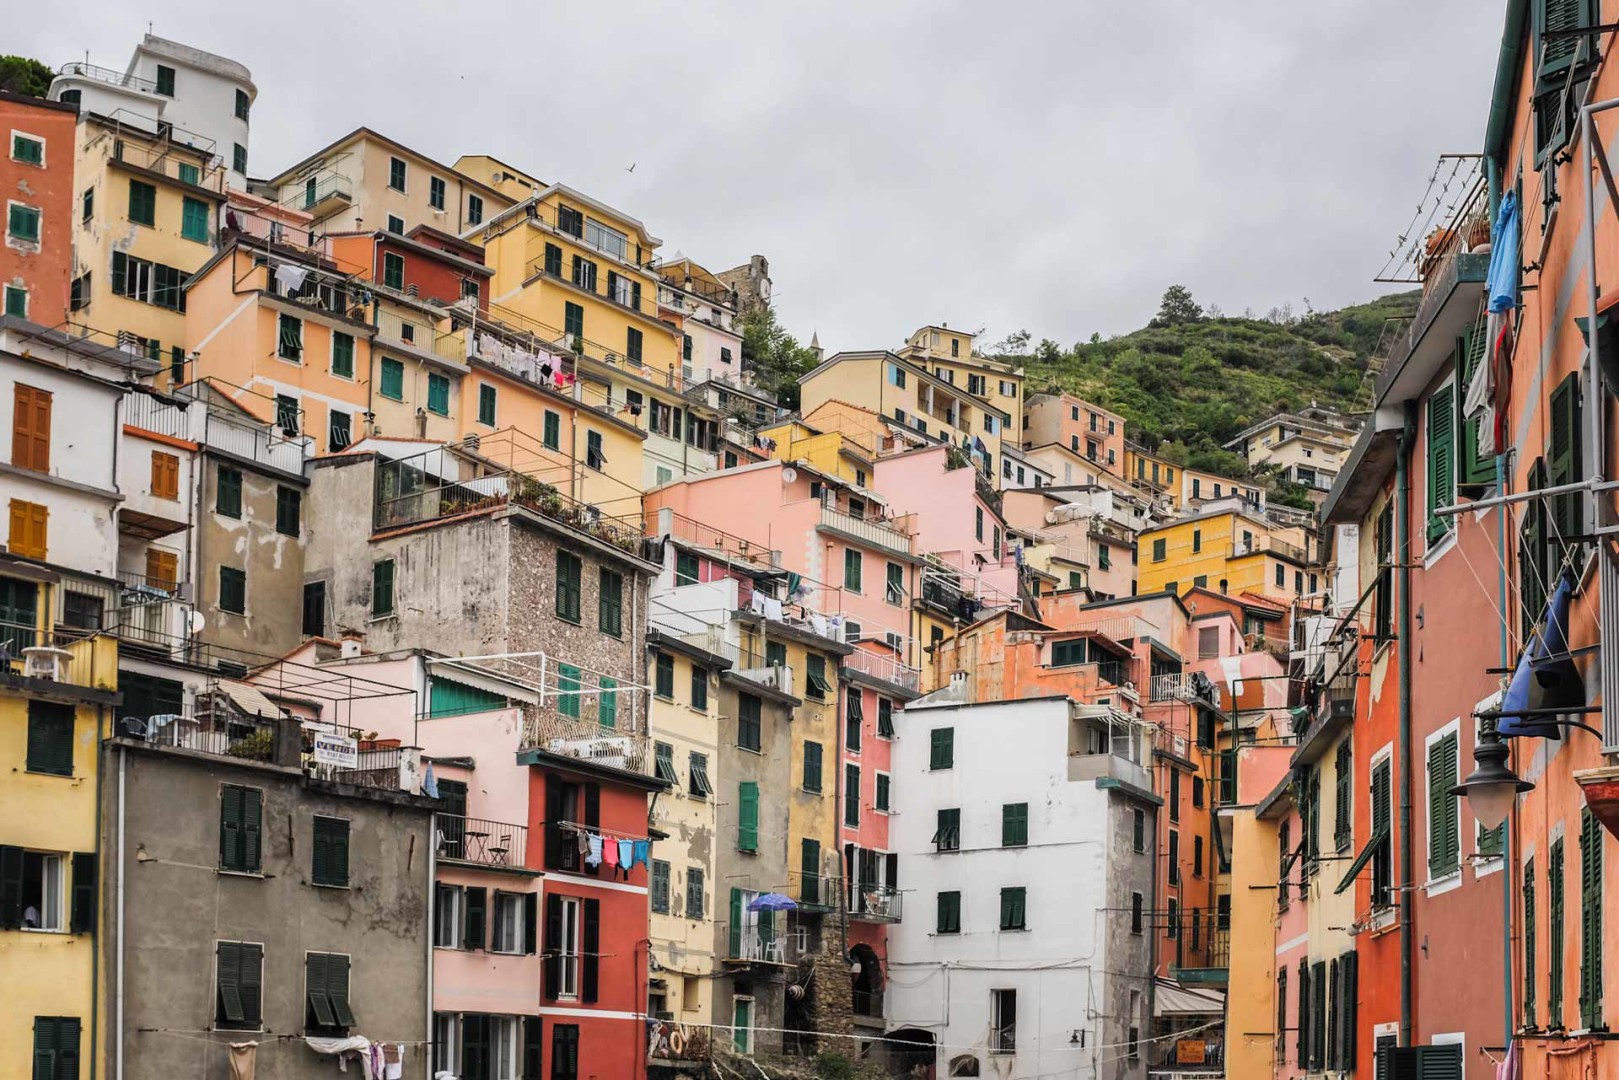 Riomaggiore hillside houses Cinque Terre Italy